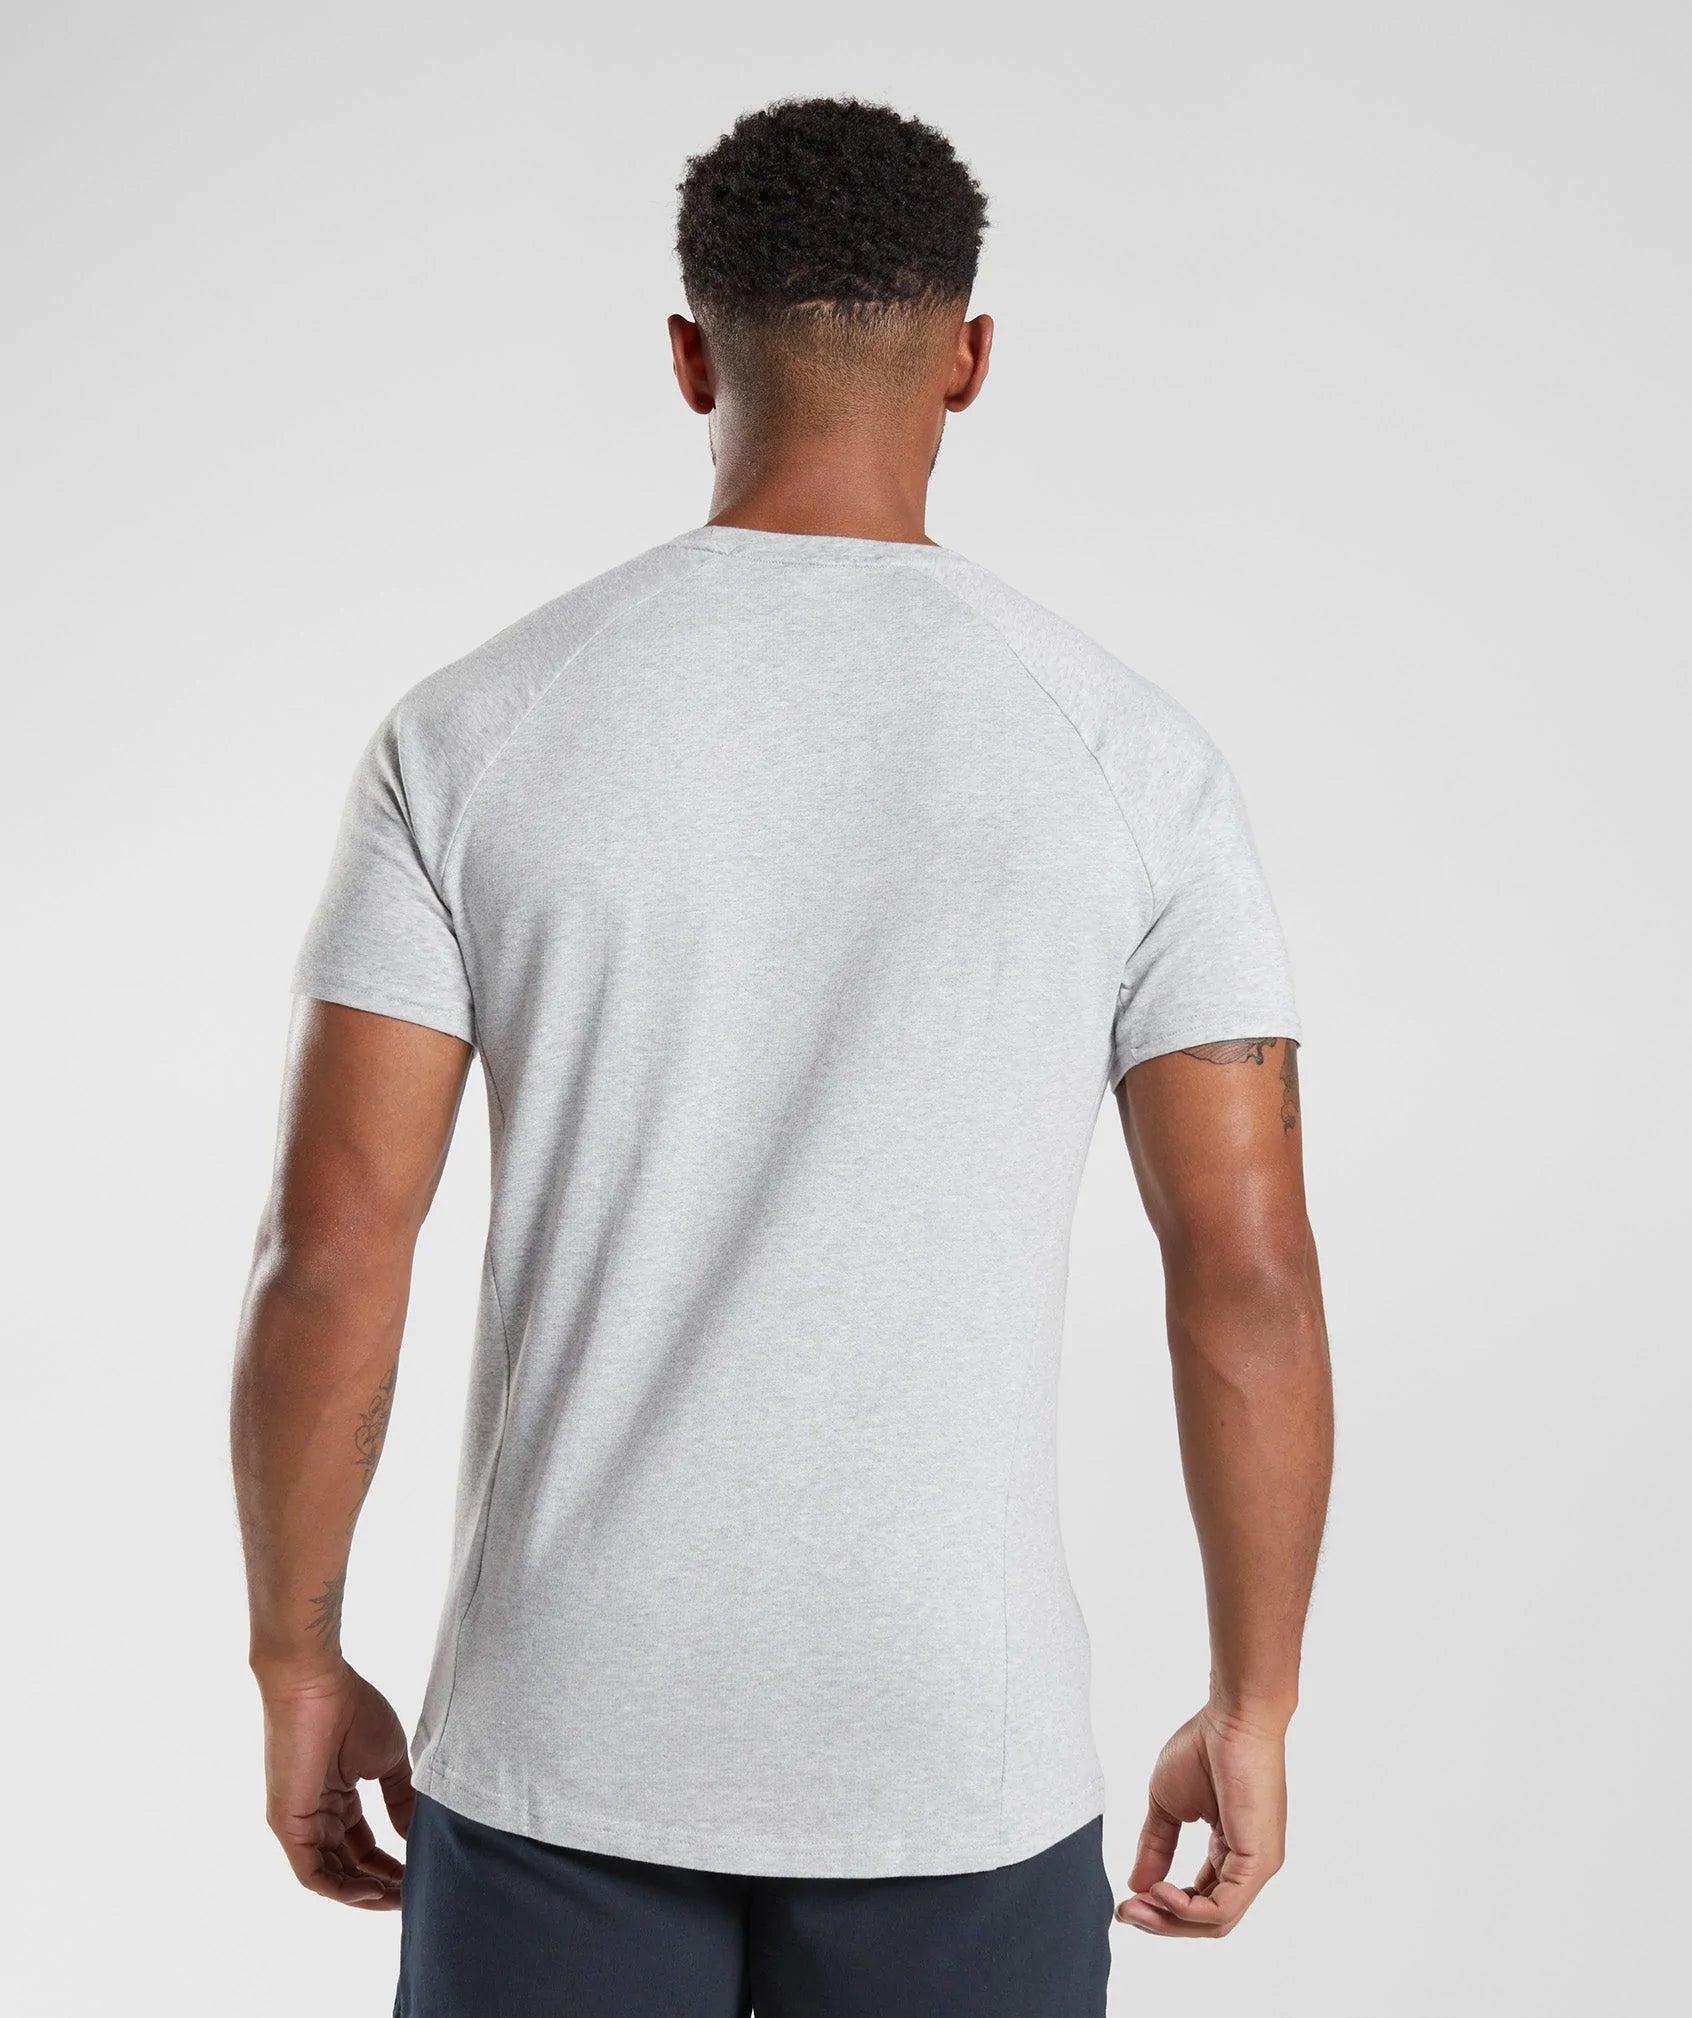 React T-Shirt in Light Grey Core Marl